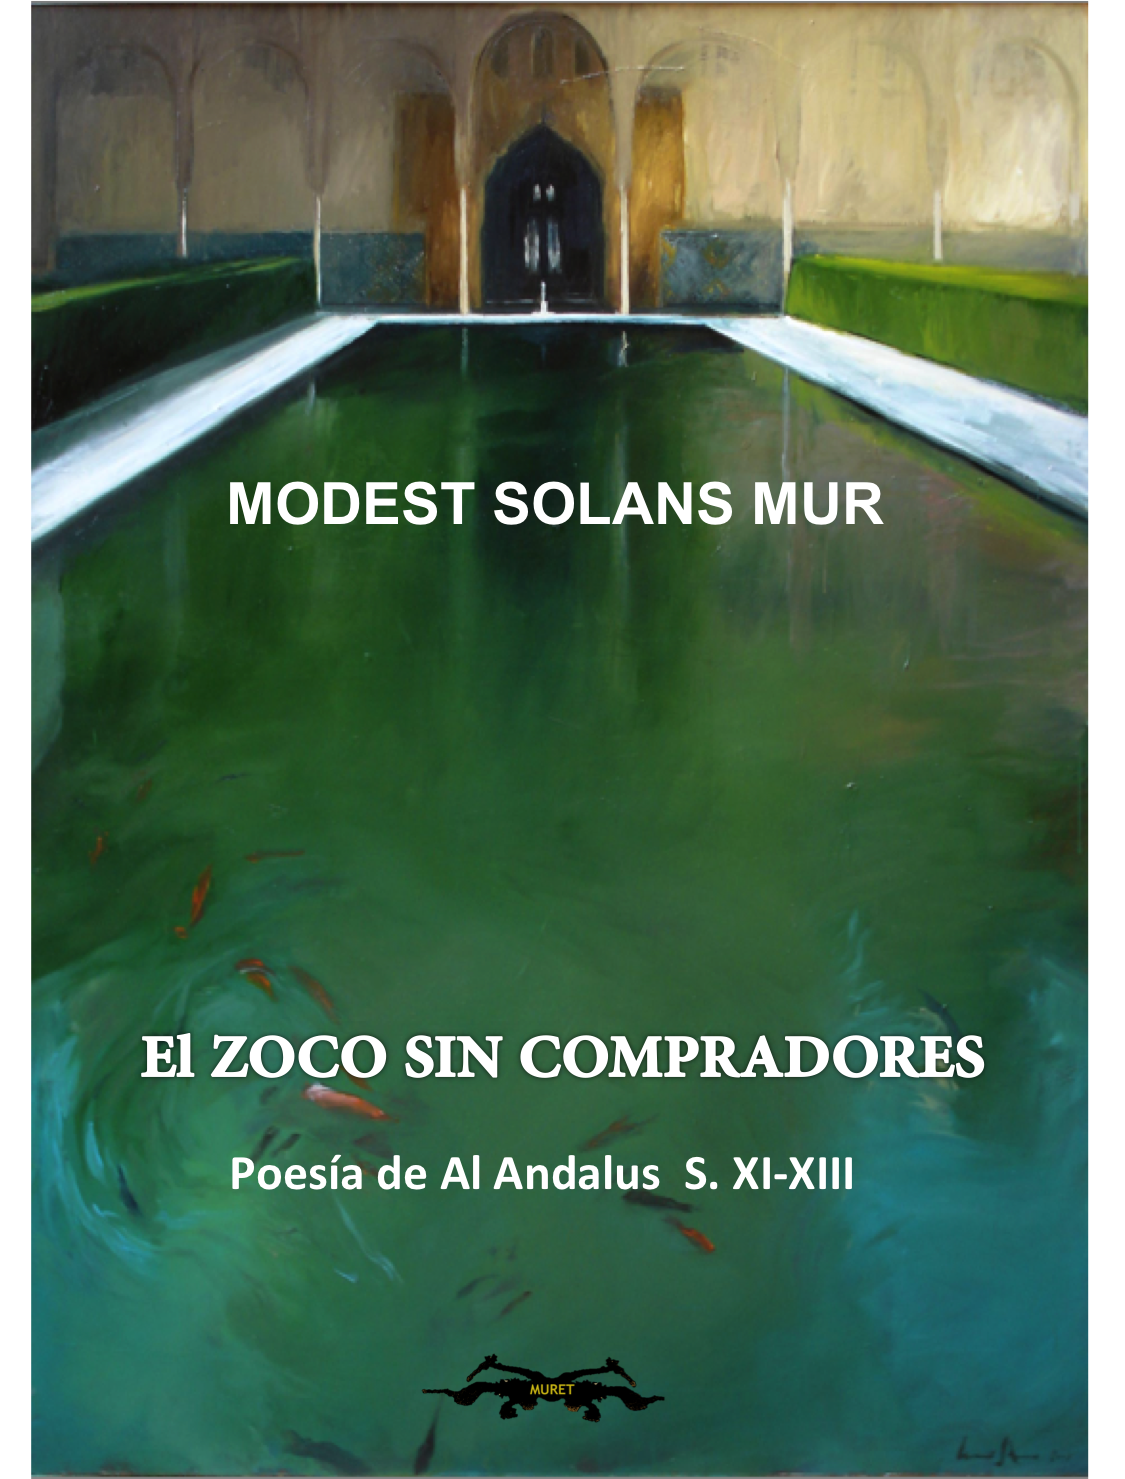 Poesía Al Andalus. Portada del libro El Zoco sin compradores de Modest Solans